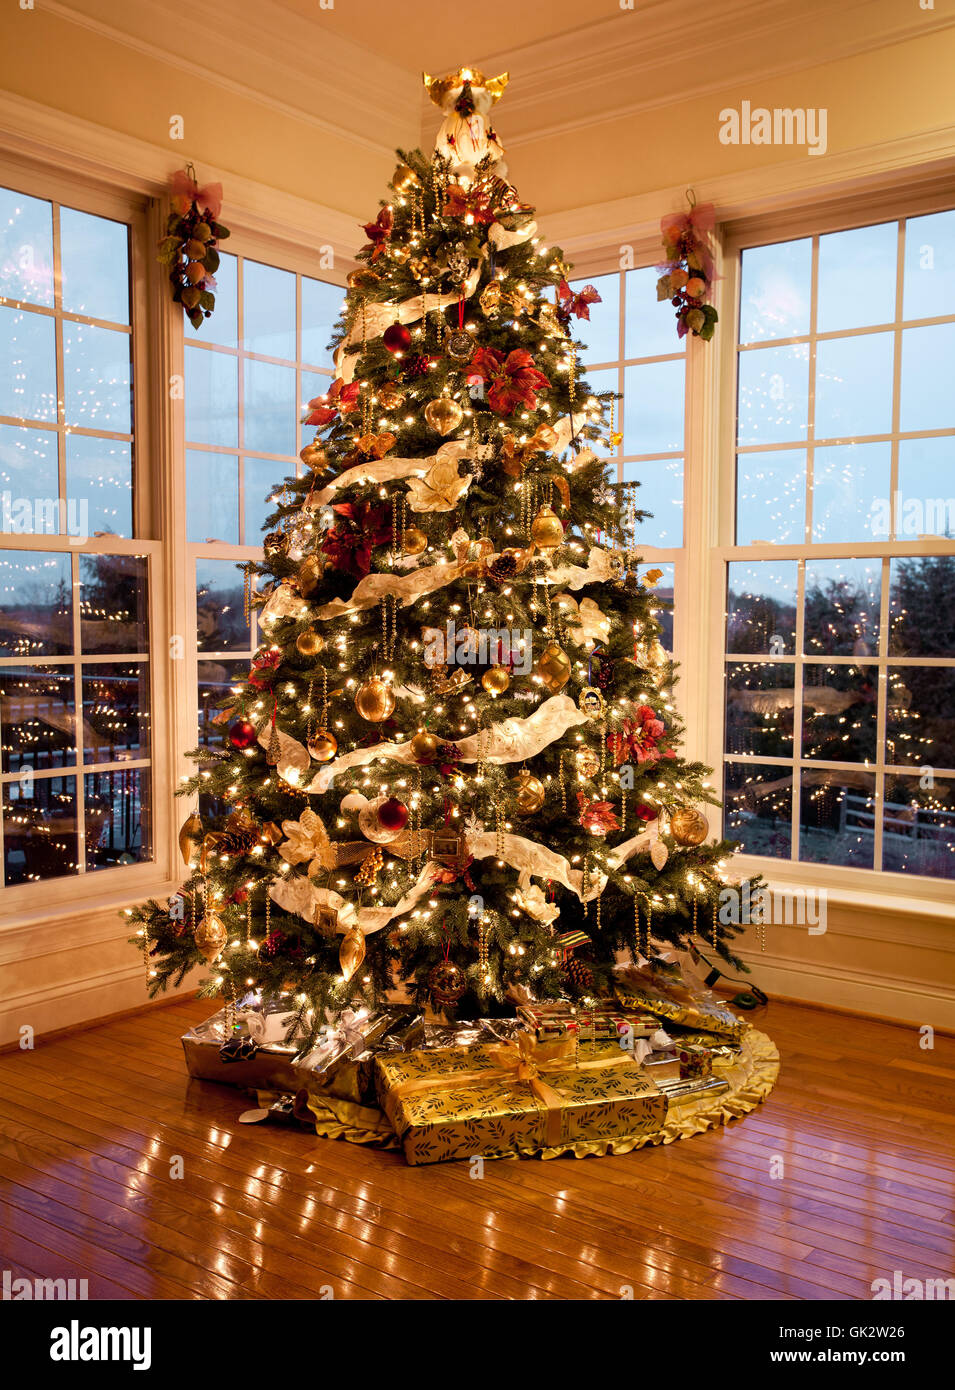 very nice christmas tree